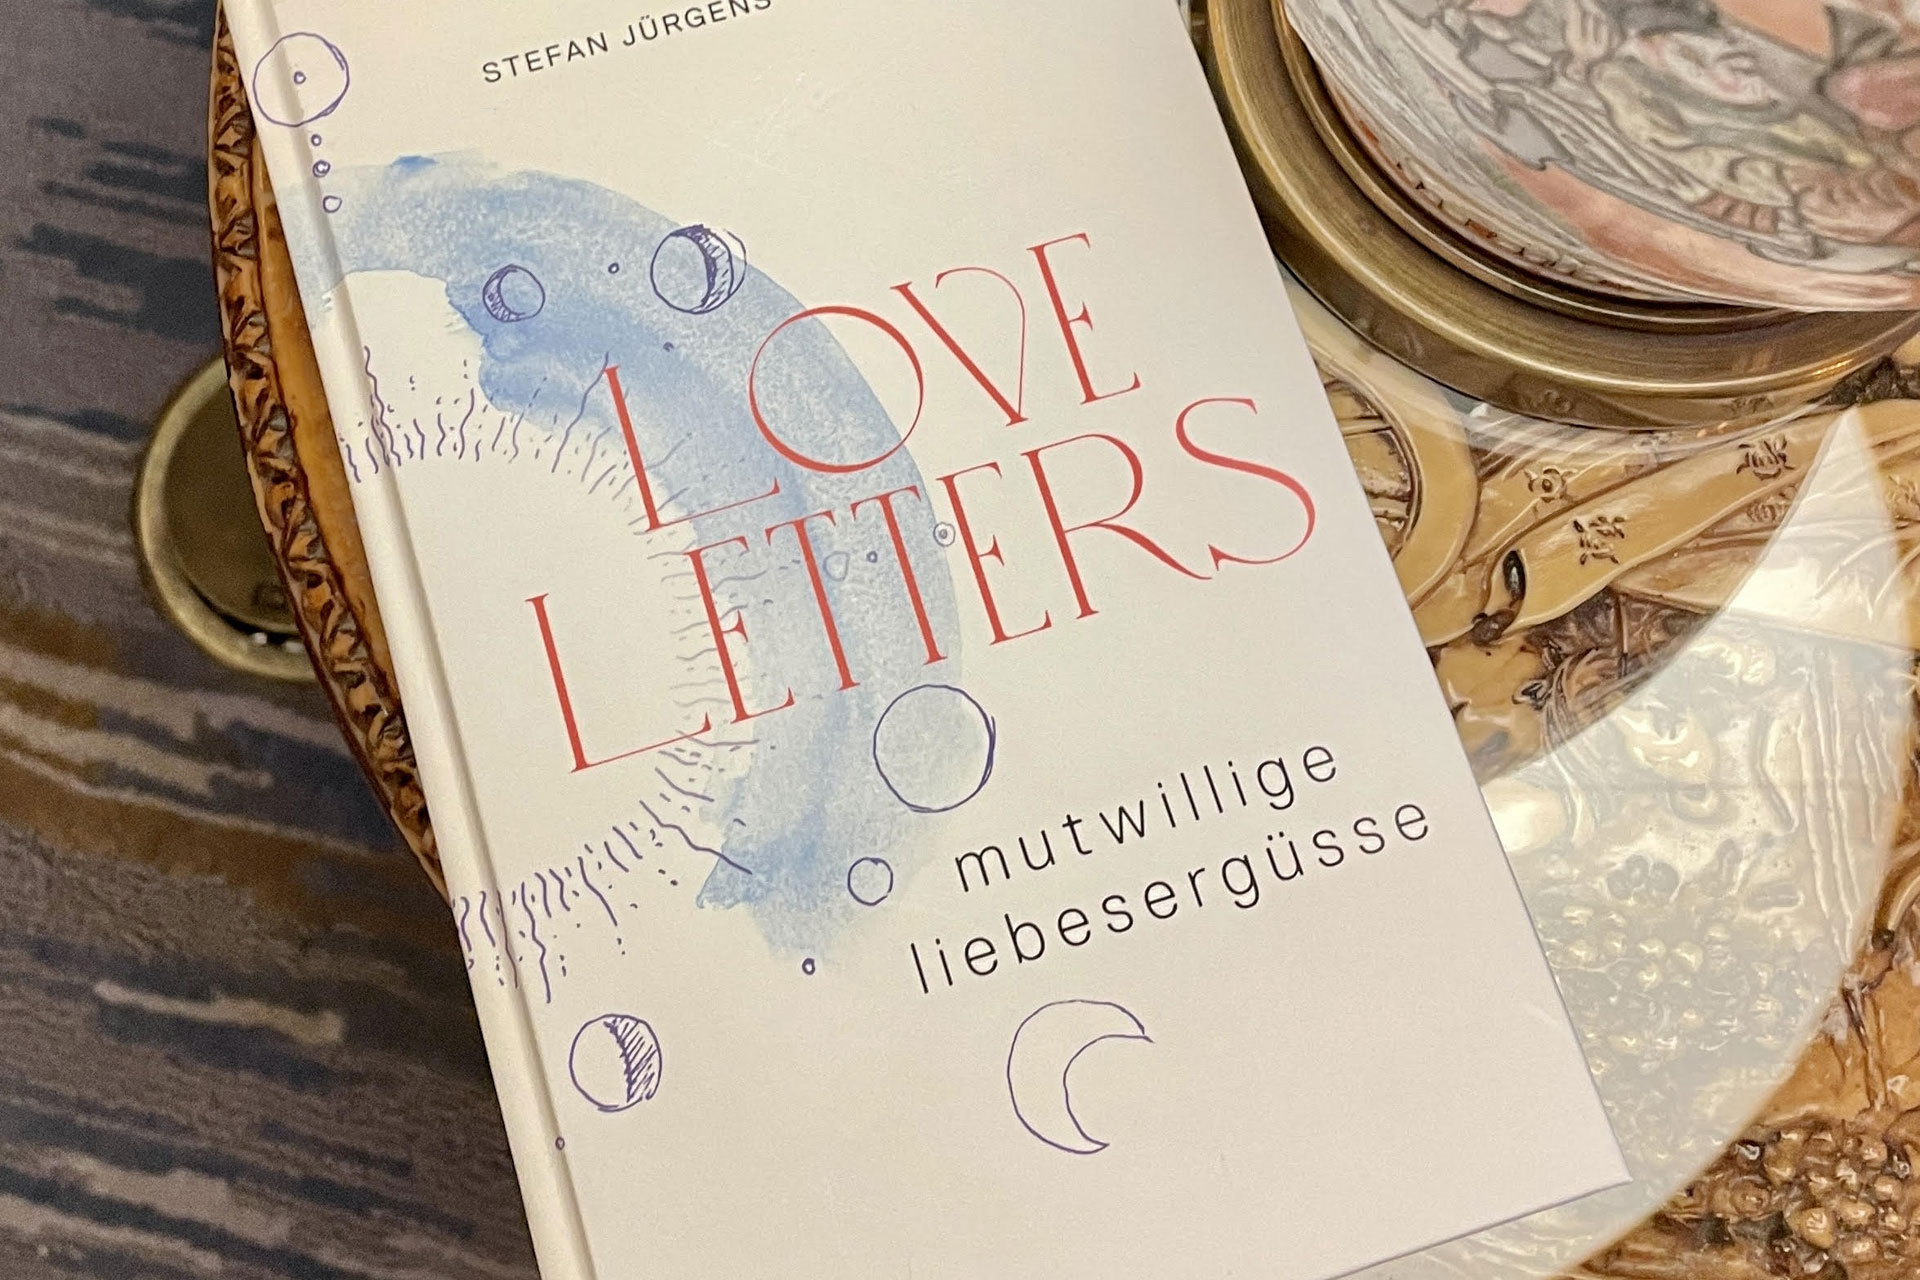 Loveletters - mutwillige liebesergüsse. Eine Liebe in Gedichten von Stefan Jürgens